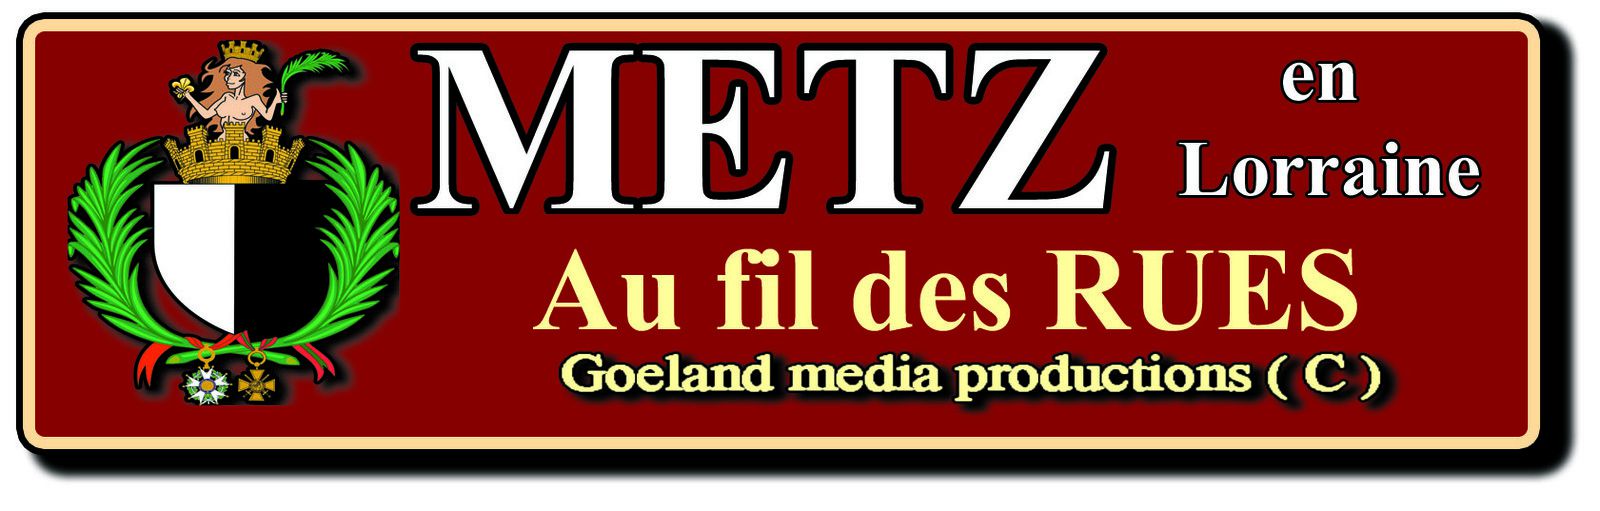 METZ la GRANDE GARE - Moselle - Grand Est - France - 1ere gare de France